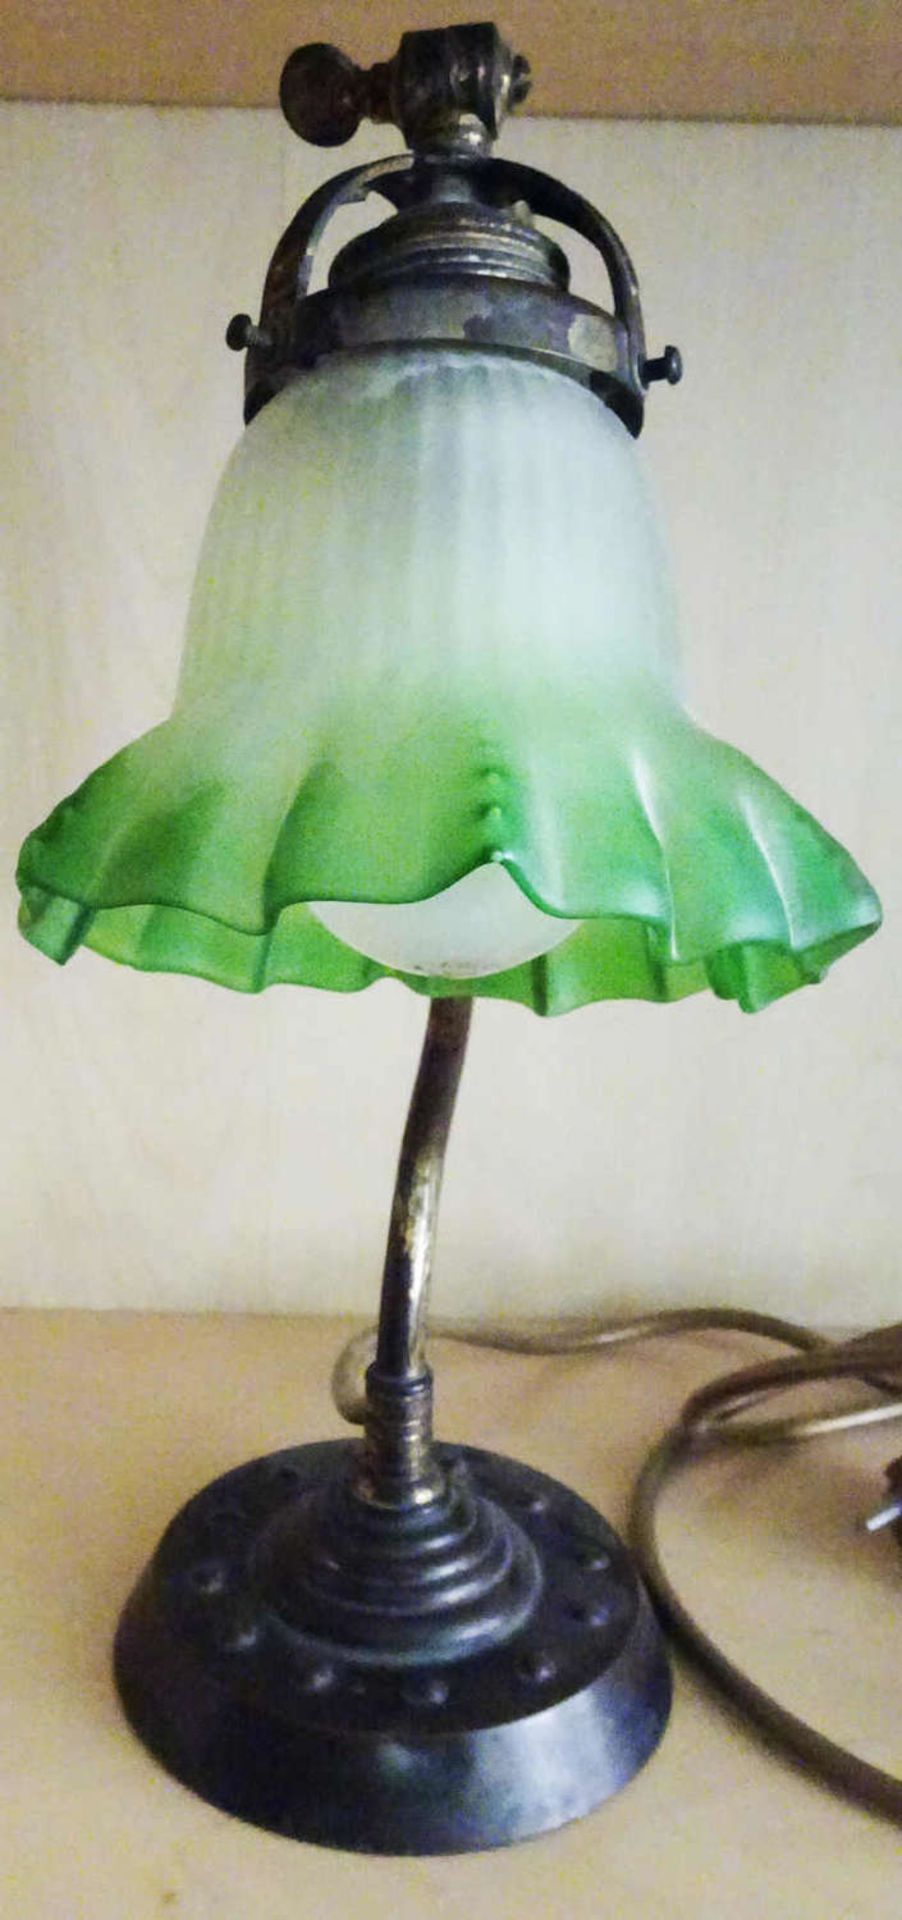 1 Jugendstil Tischlampe mit grünem Milchglasschirm in Metallmontur. Höhe ca. 35 cm1 Art Nouveau - Bild 2 aus 2